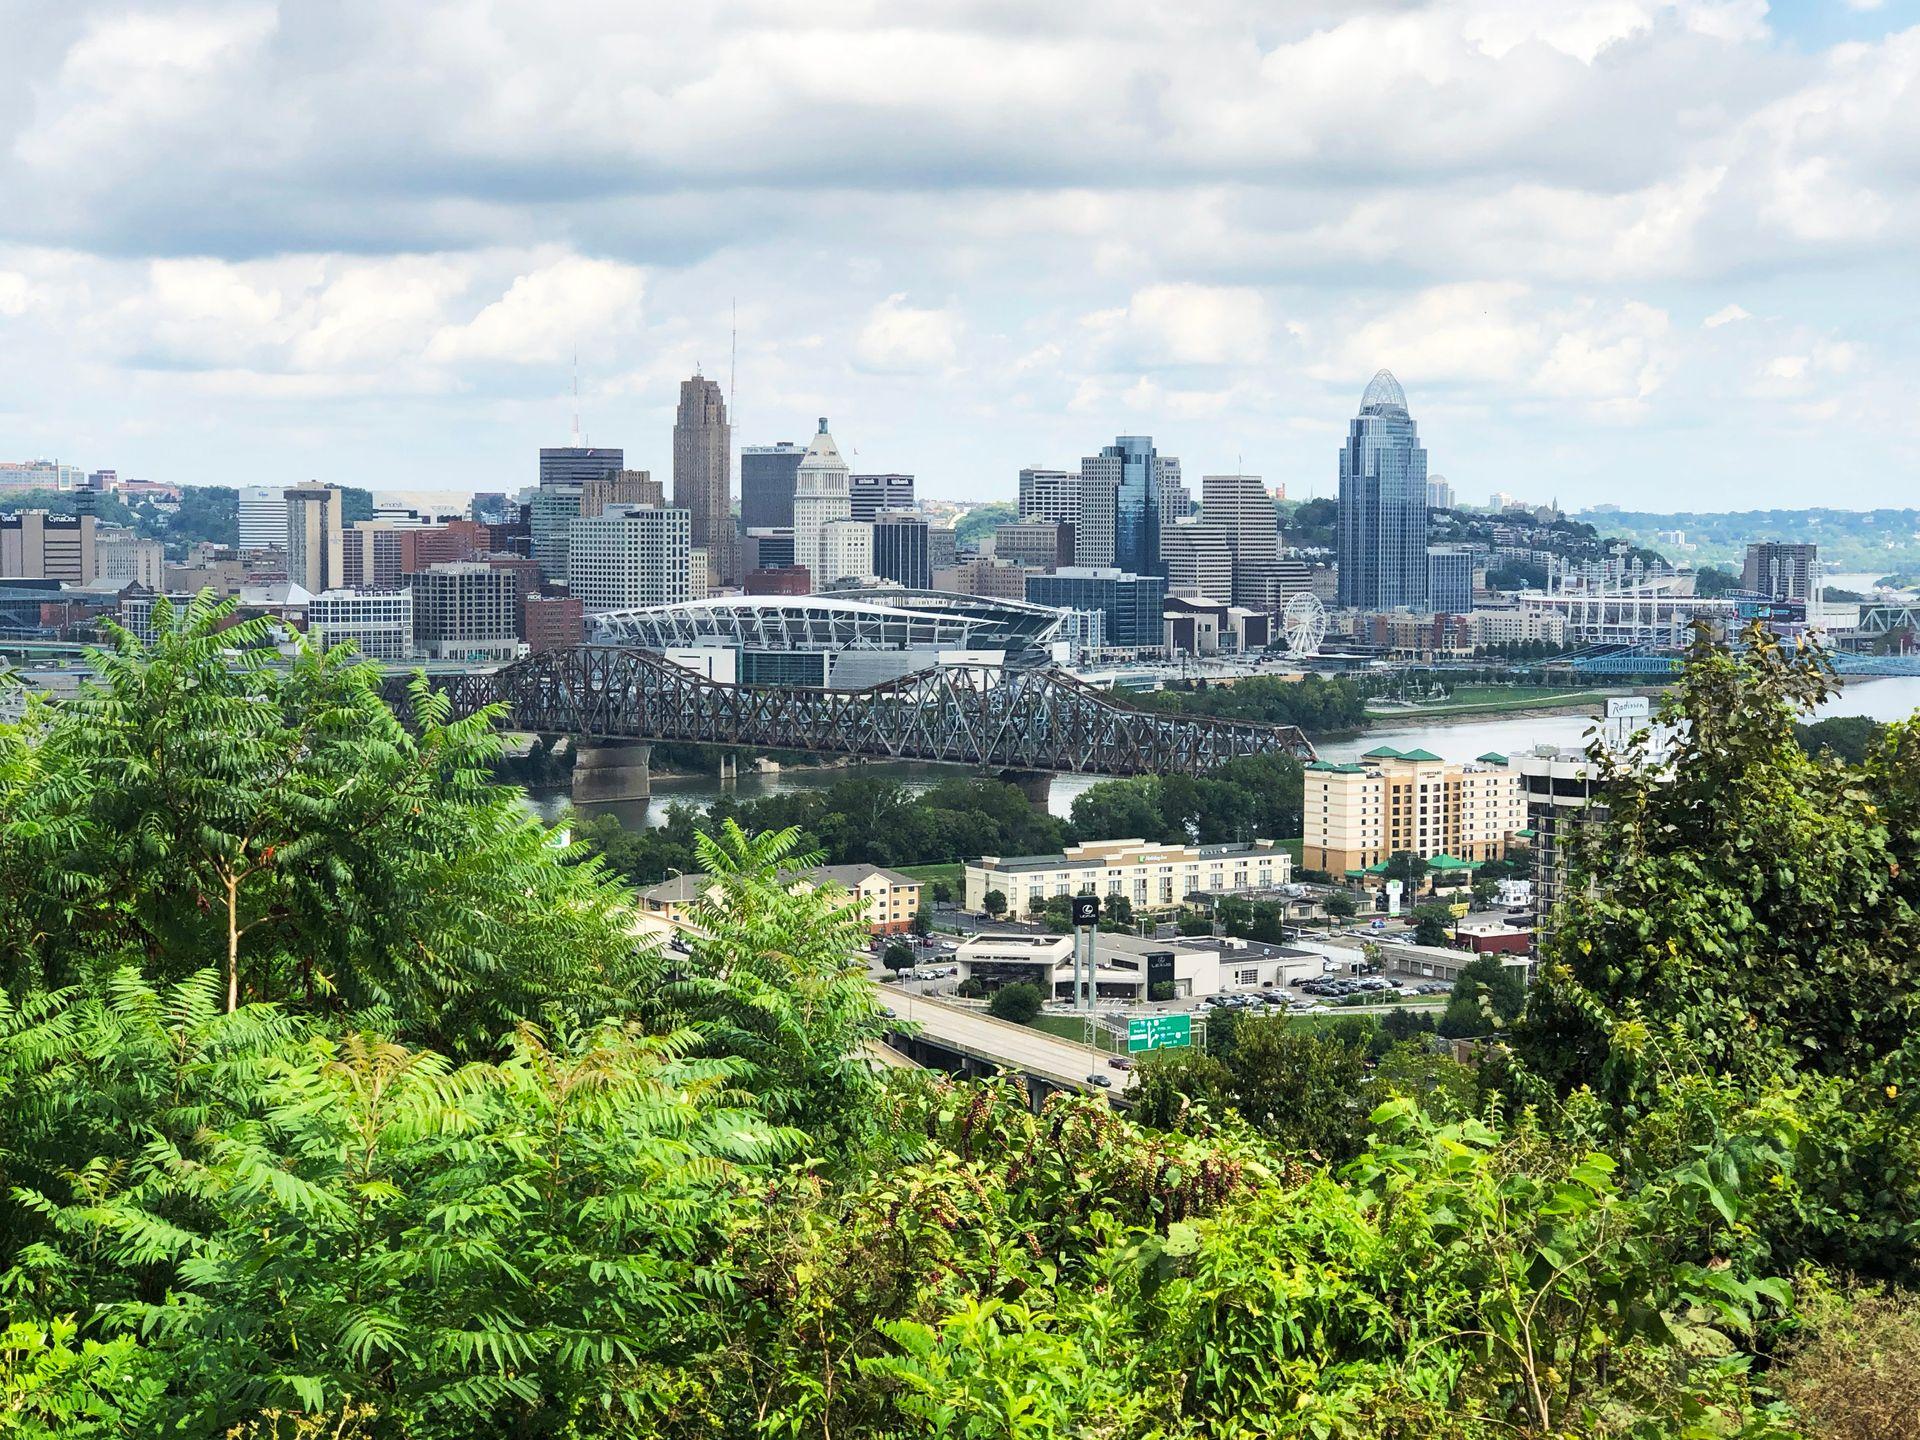 A view of the Cincinnati skyline seen from Devou Park